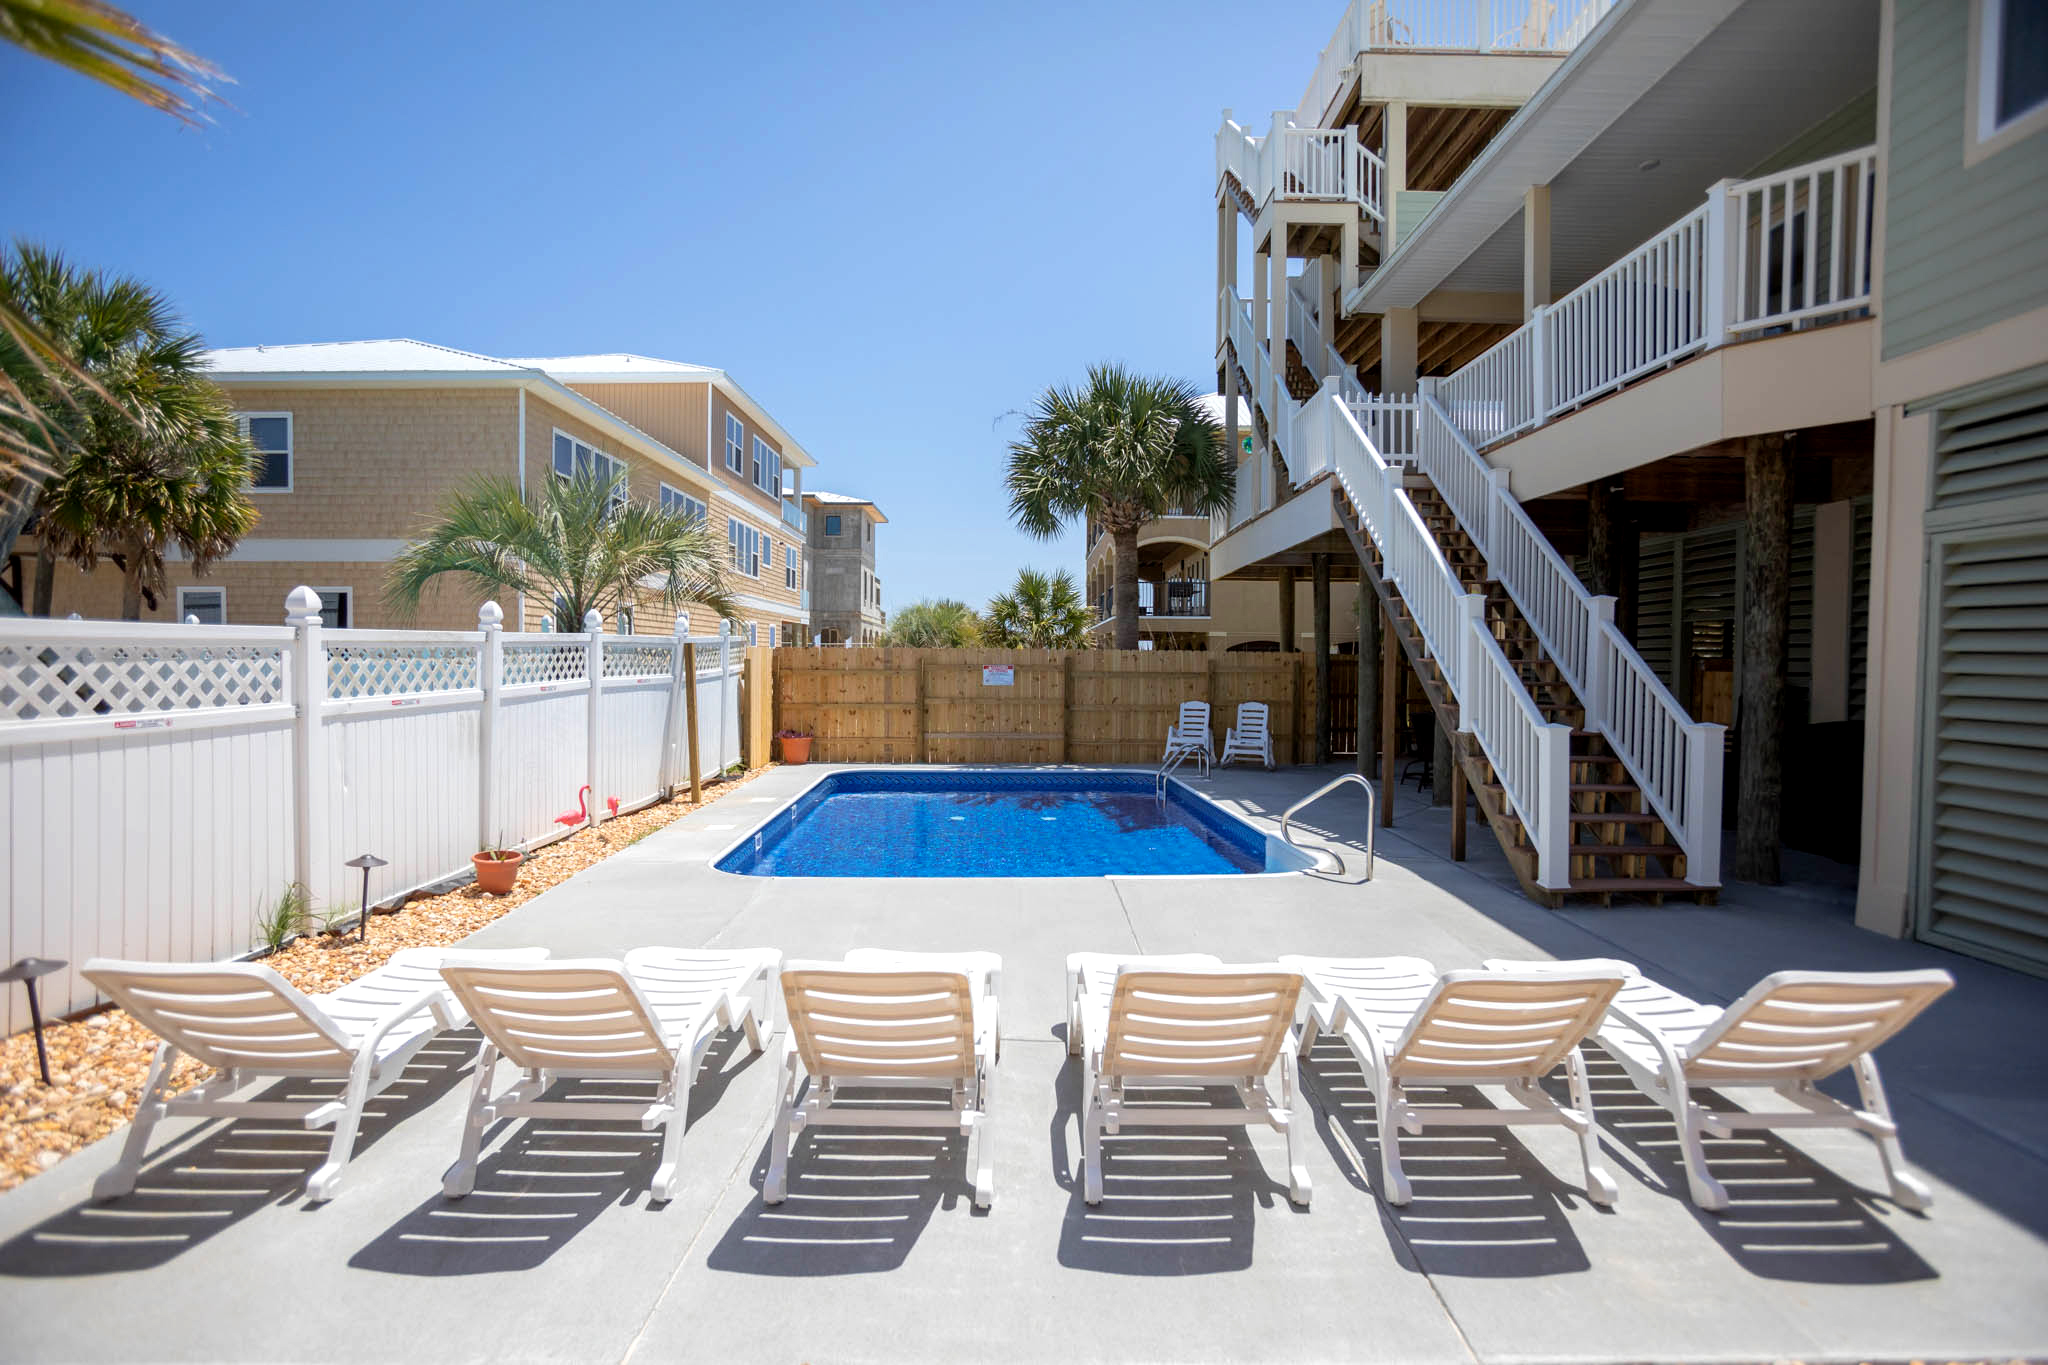 Calle Juela 5 - Sandy Crab Horizon House / Cottage rental in Pensacola Beach House Rentals in Pensacola Beach Florida - #44